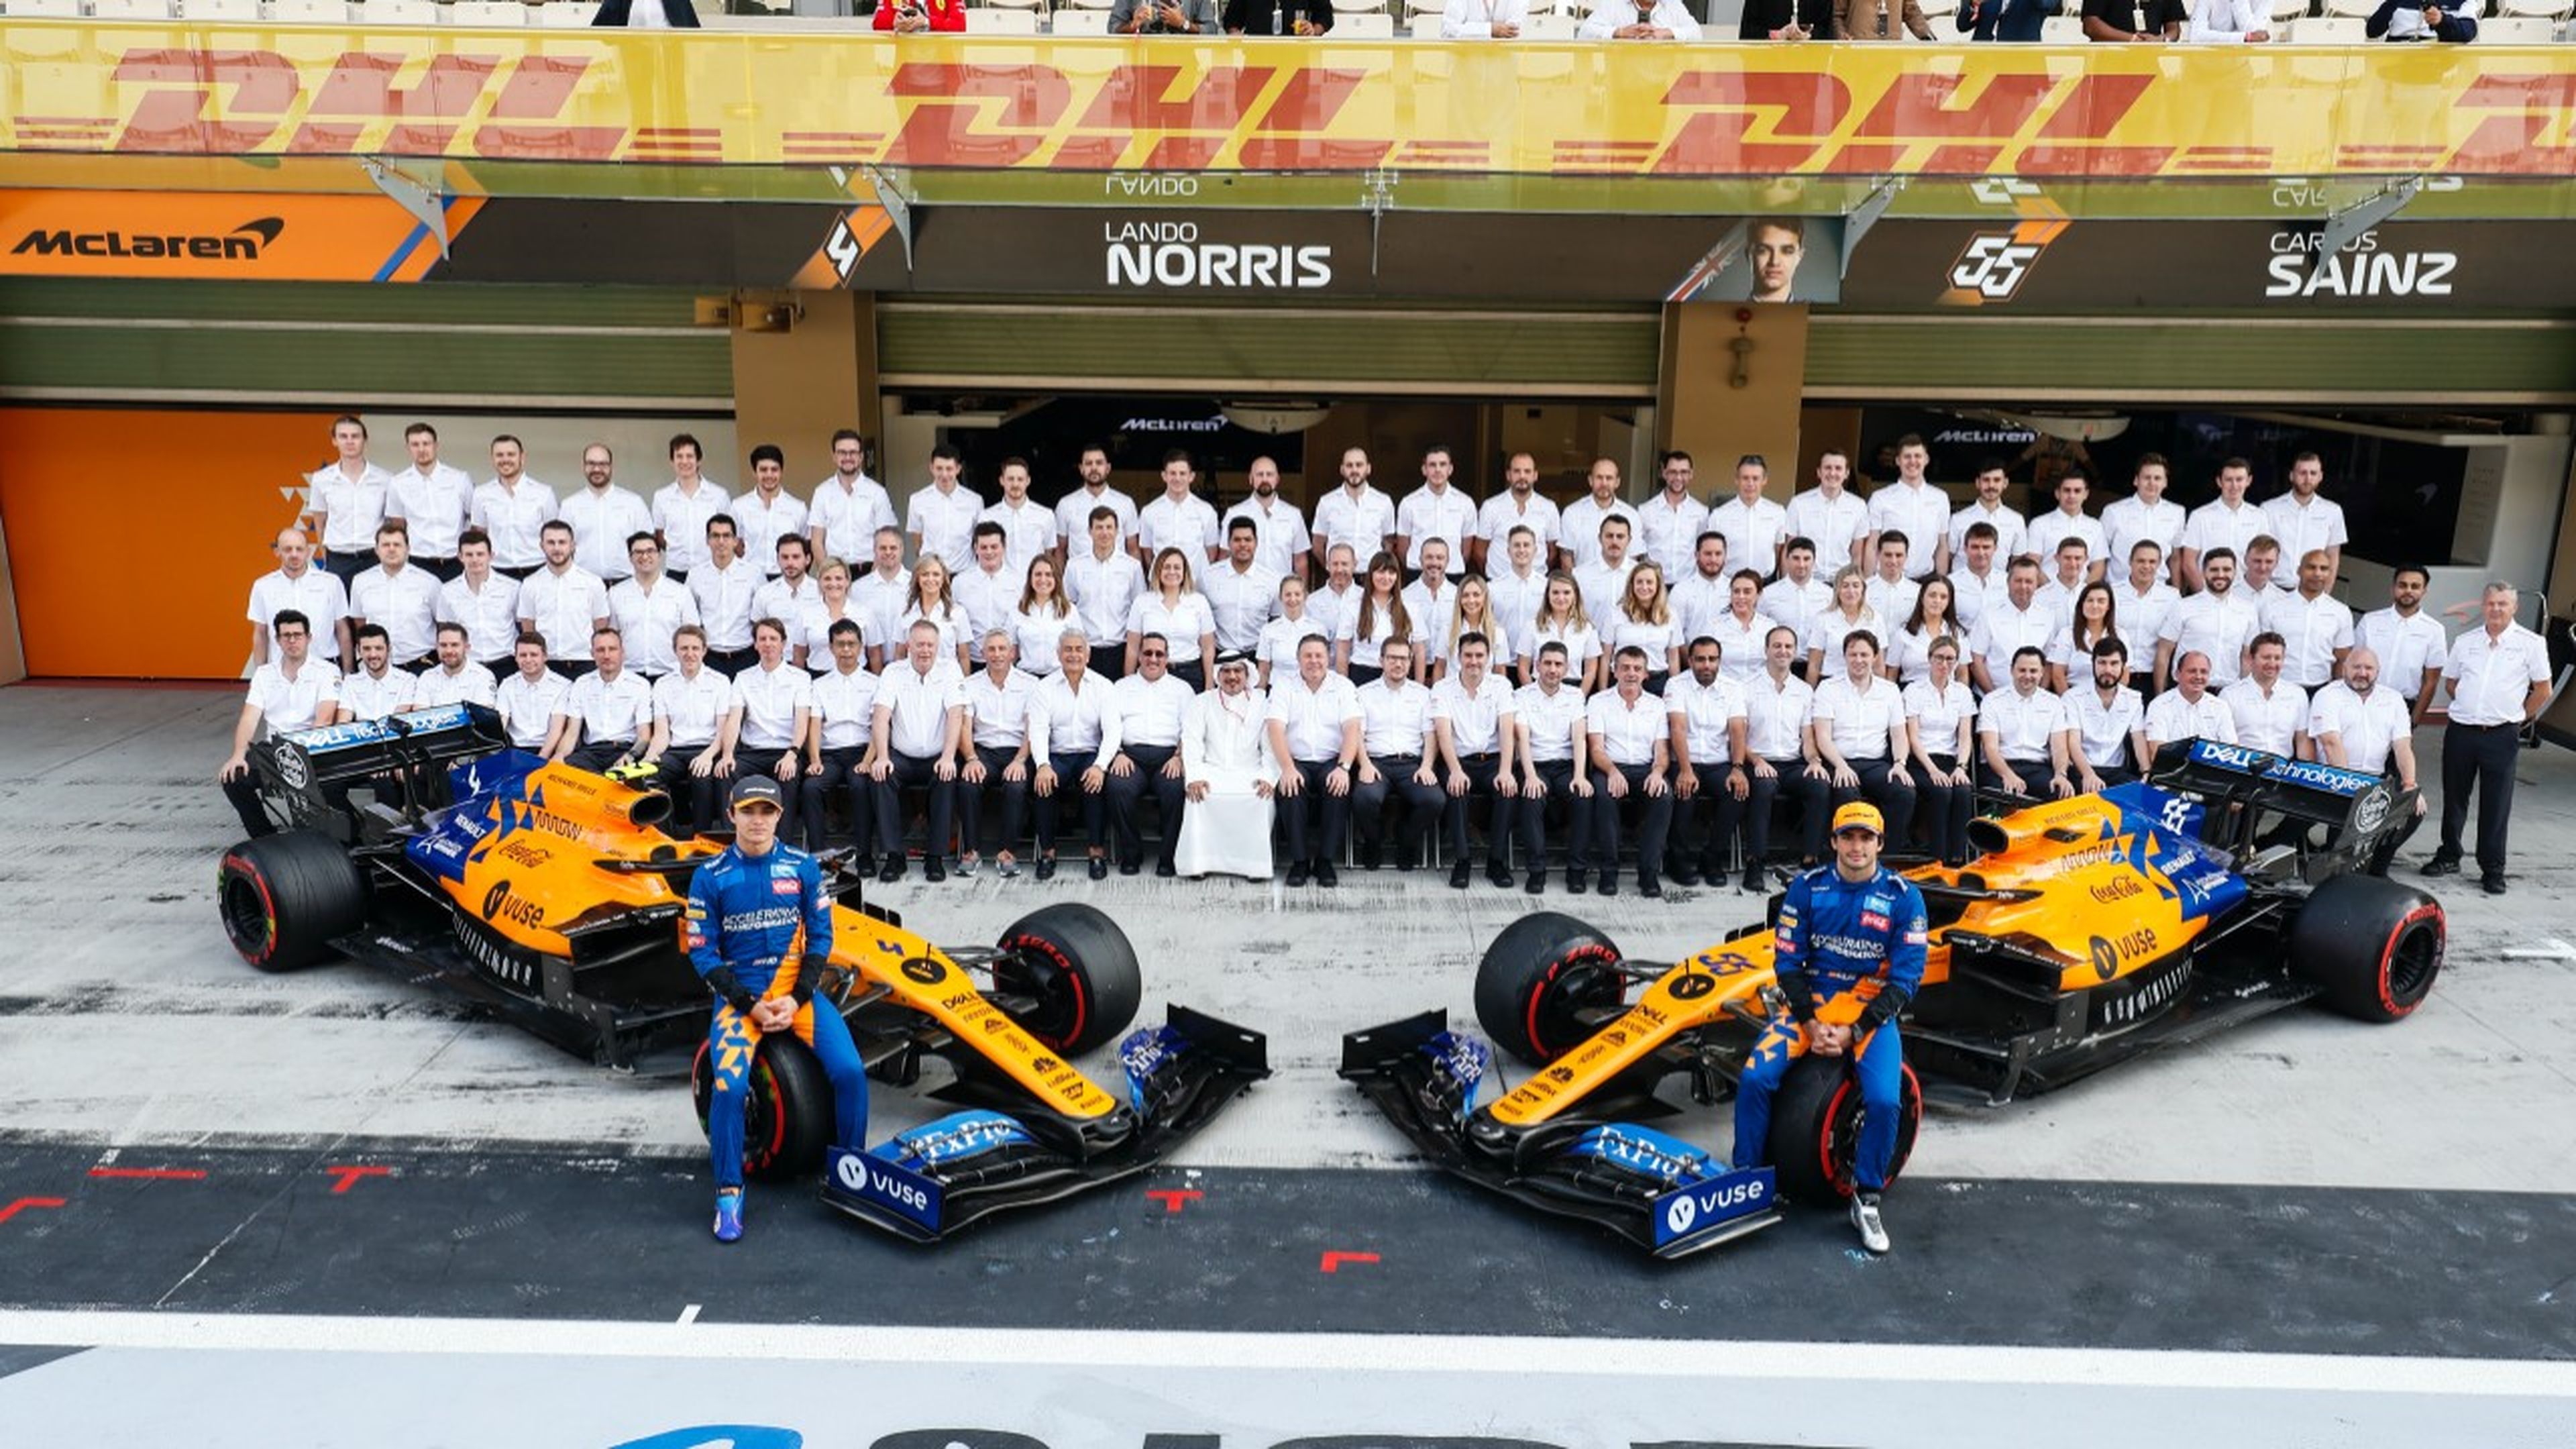 Equipo McLaren F1 2019